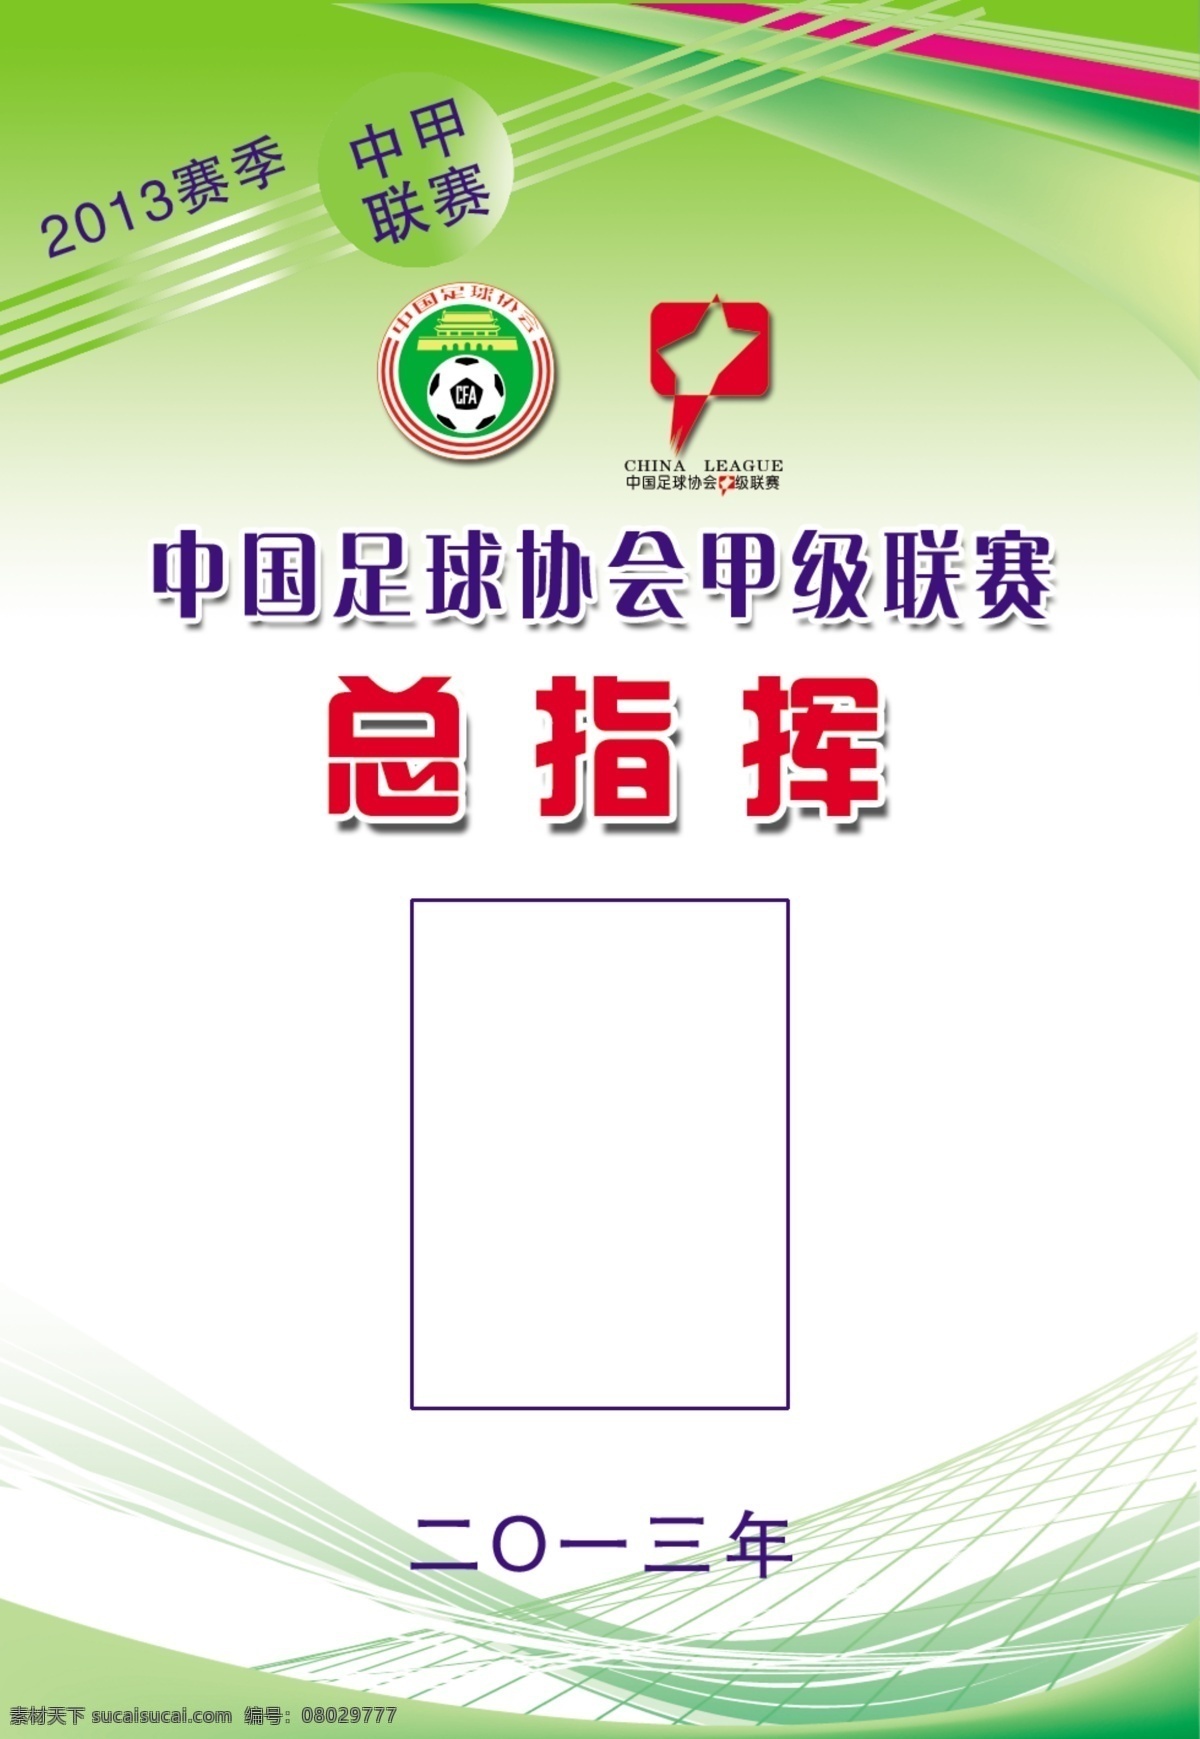 中国足协 甲 联 总指挥 工作证 2013赛季 中甲联赛 甲级联赛 指挥 展板模板 广告设计模板 源文件